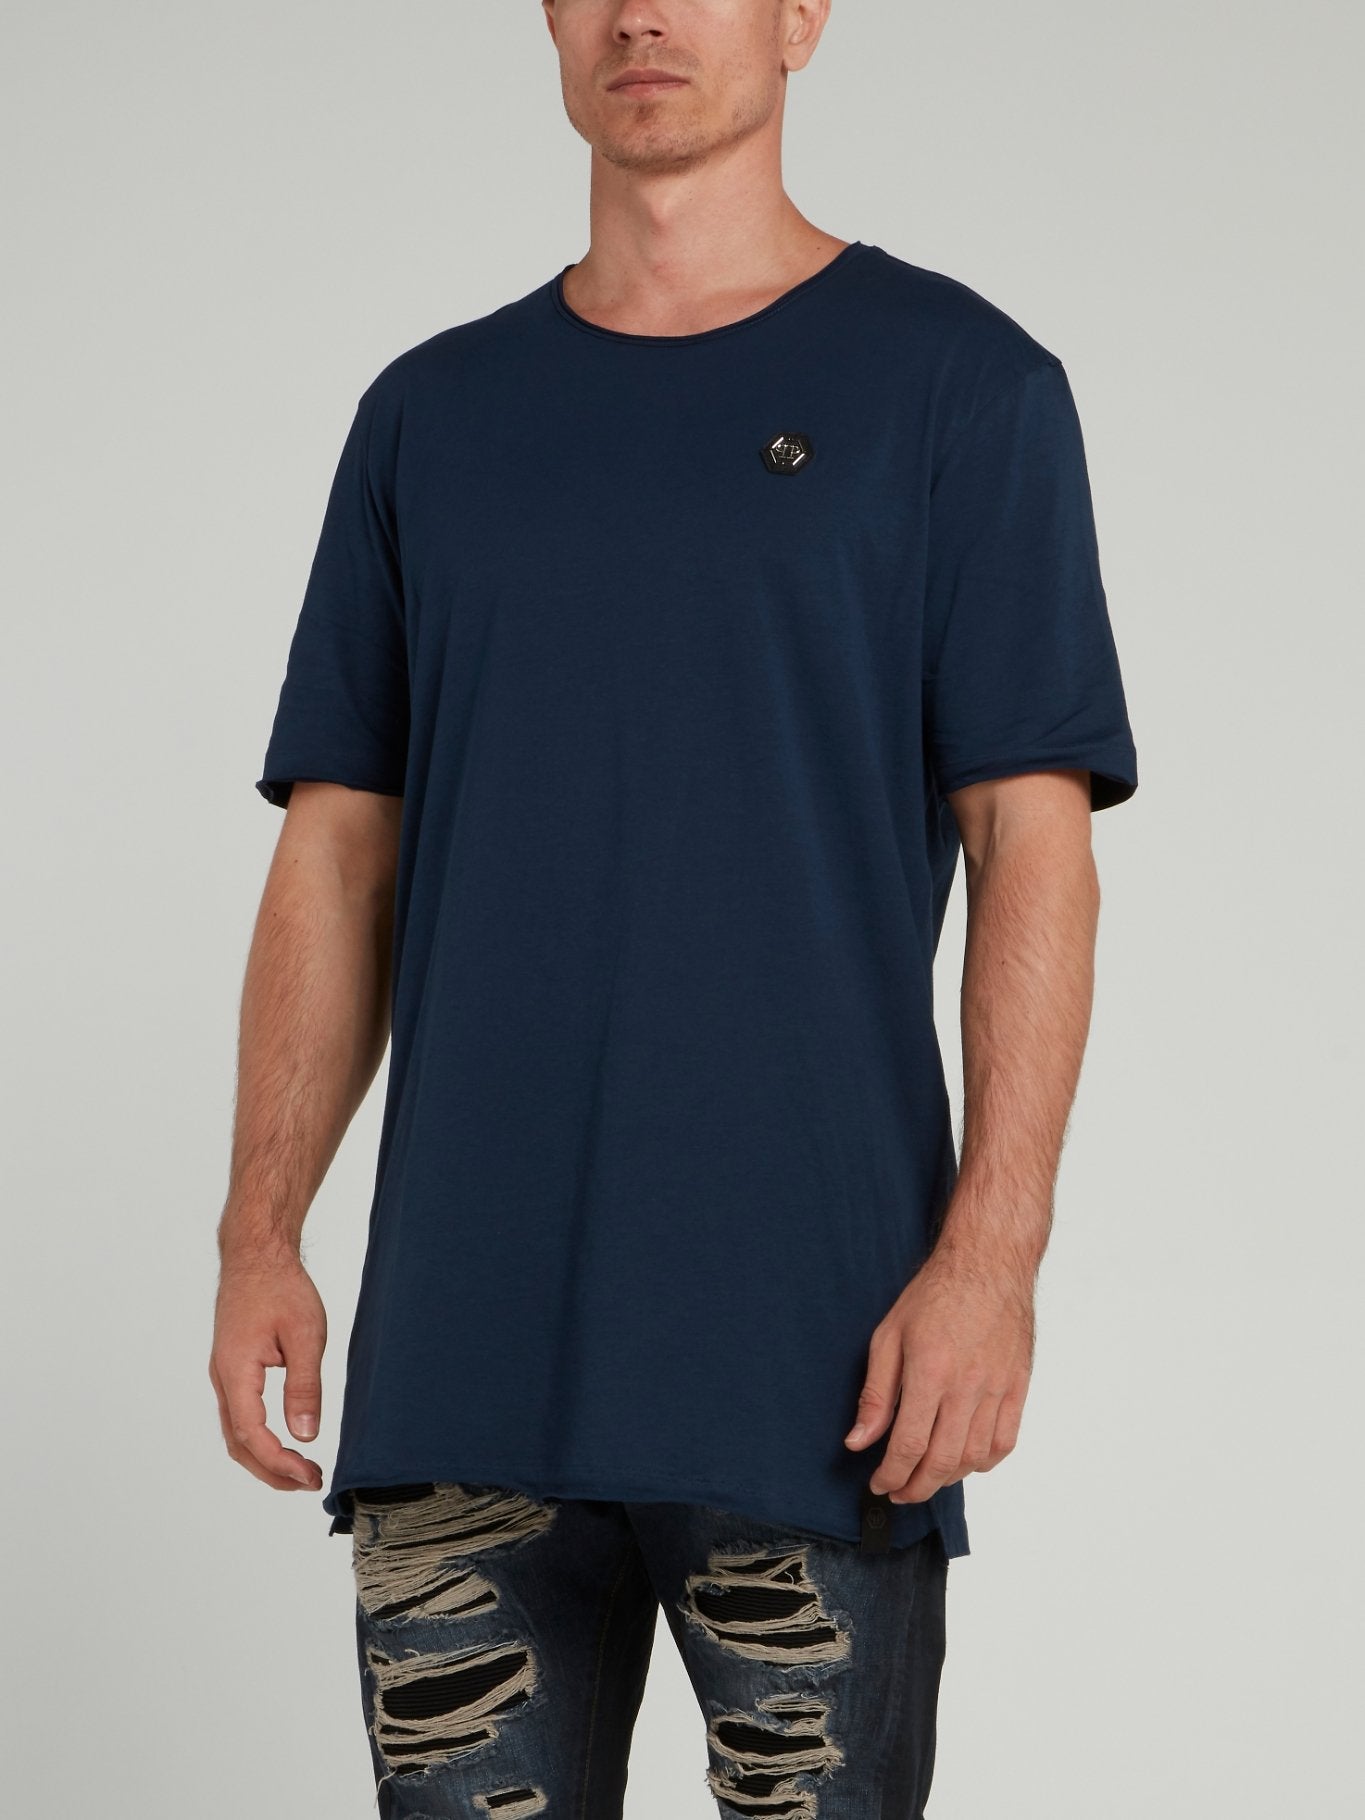 Navy Half Sleeve Round Neck T-Shirt